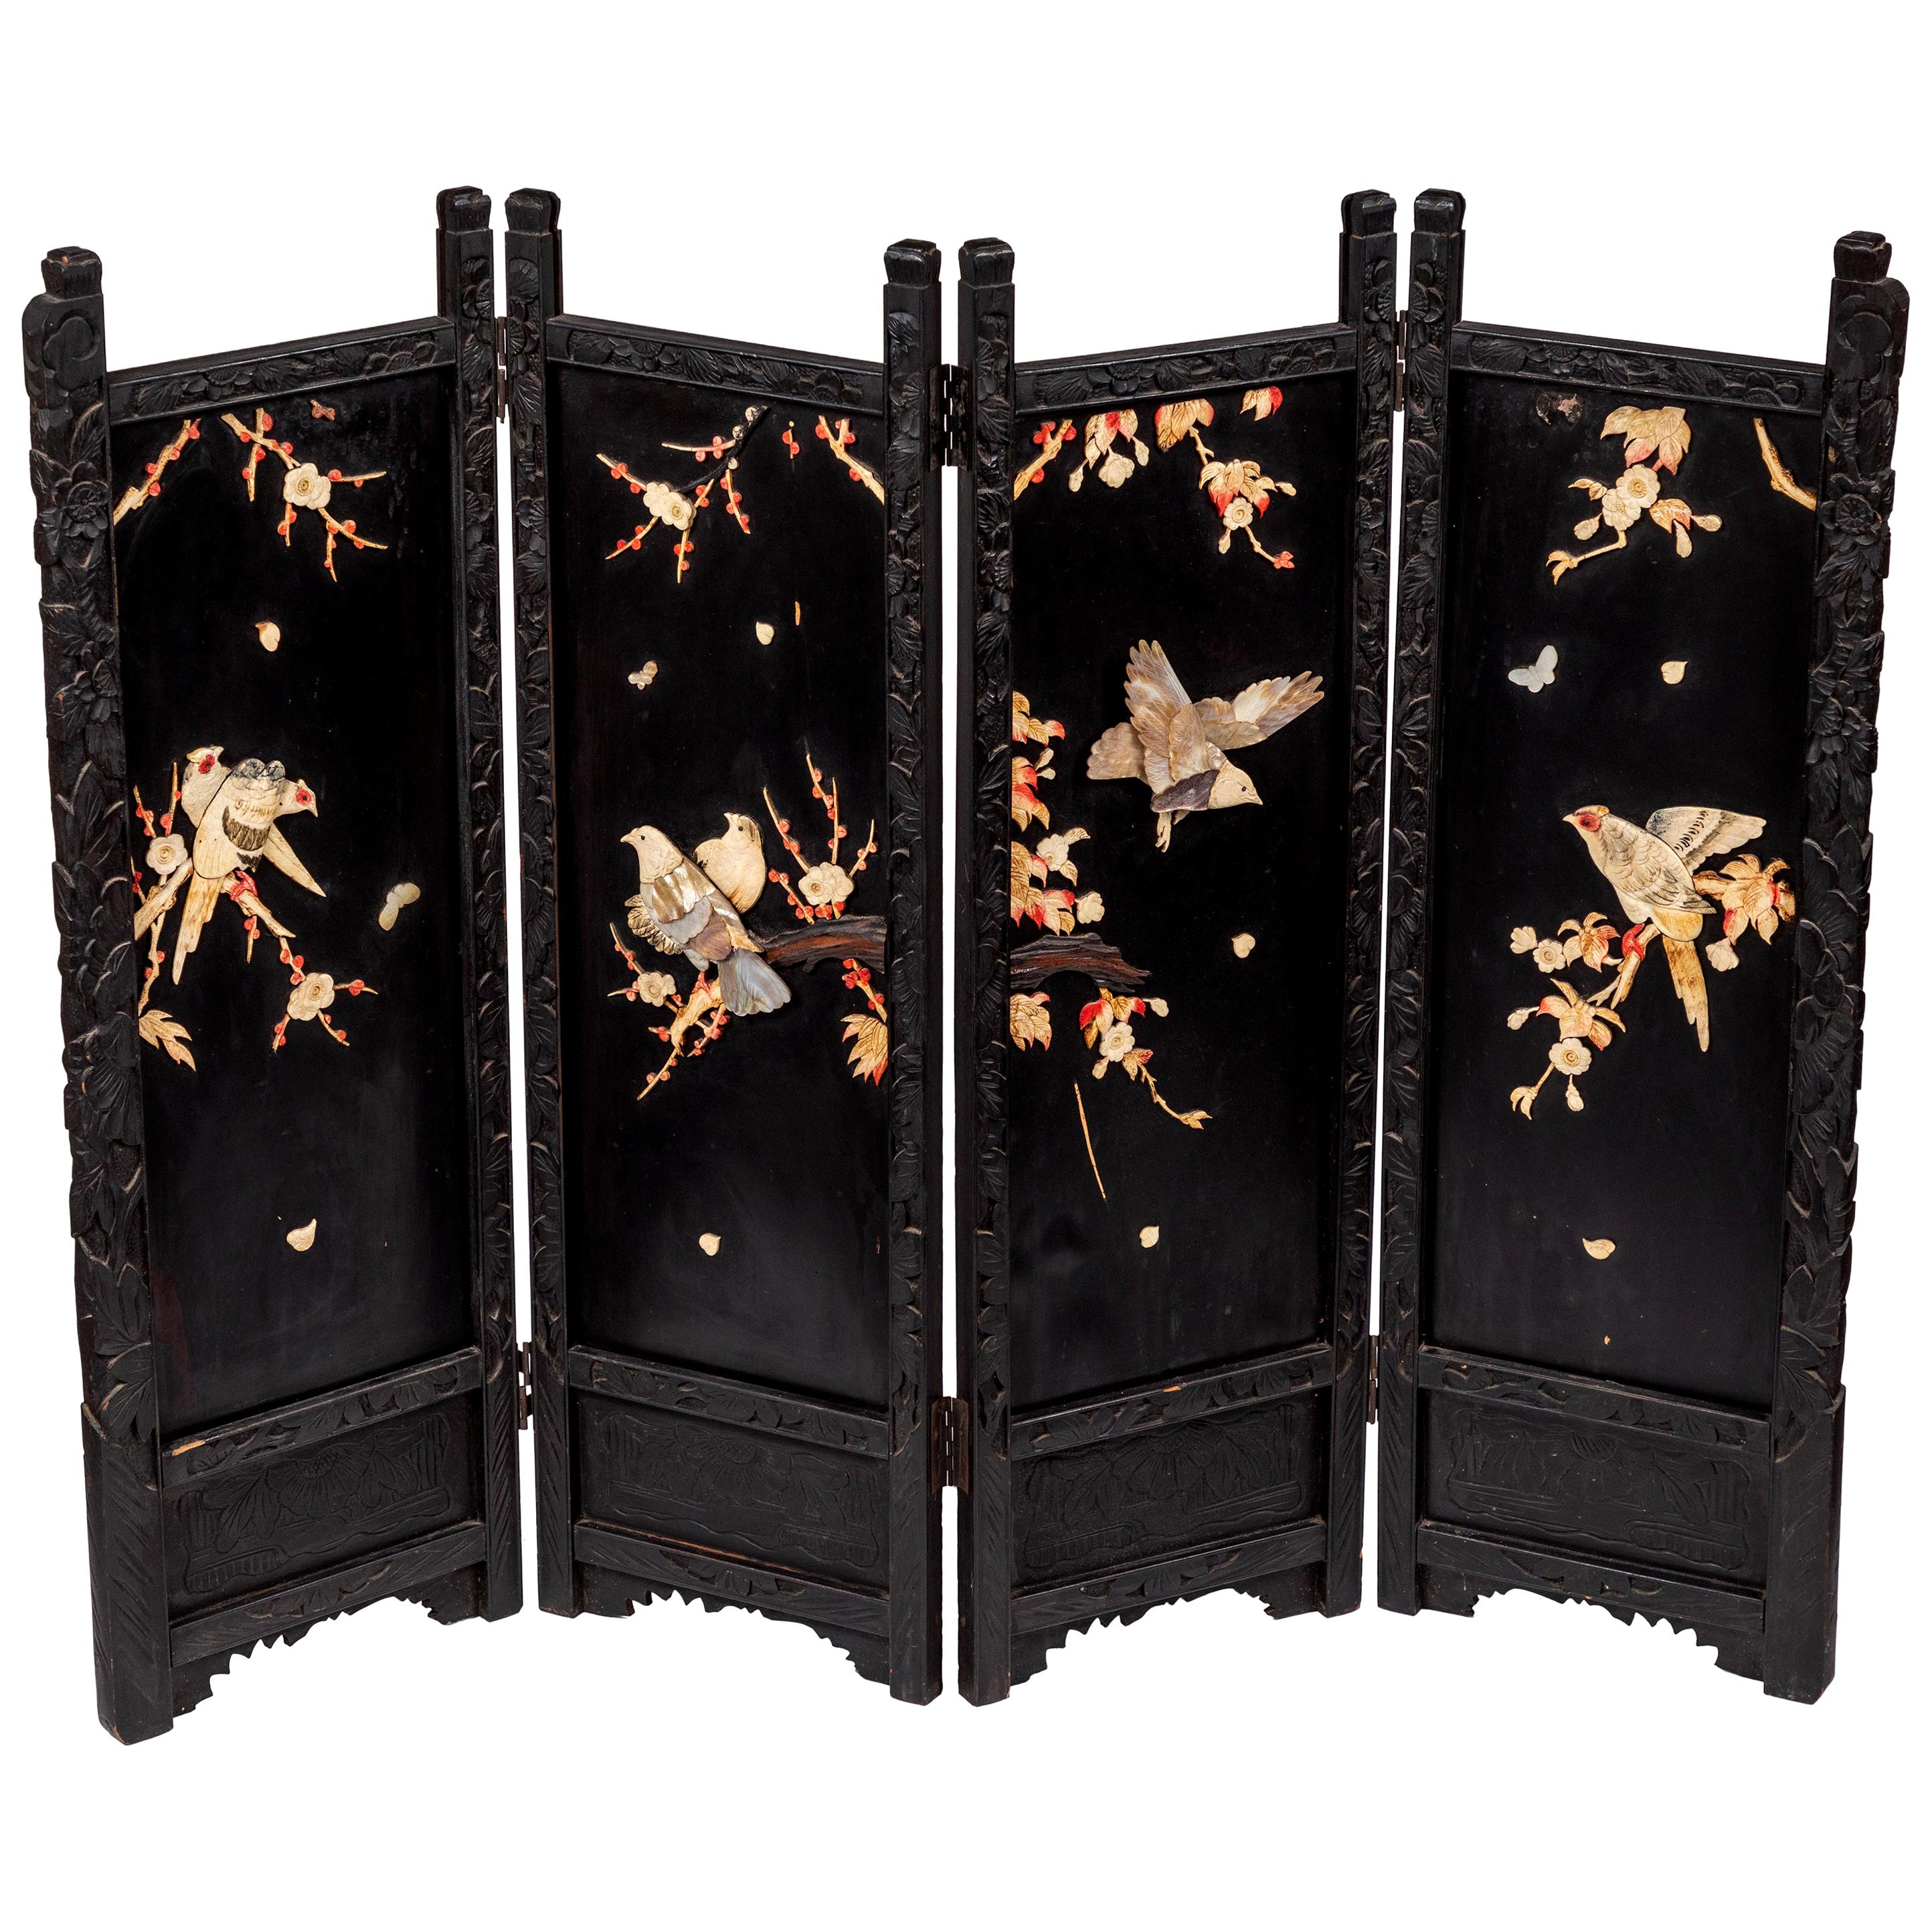 Panneaux en laque noire décorés d'oiseaux sculptés en nacre et en os et de branches de cerisier en fleurs.